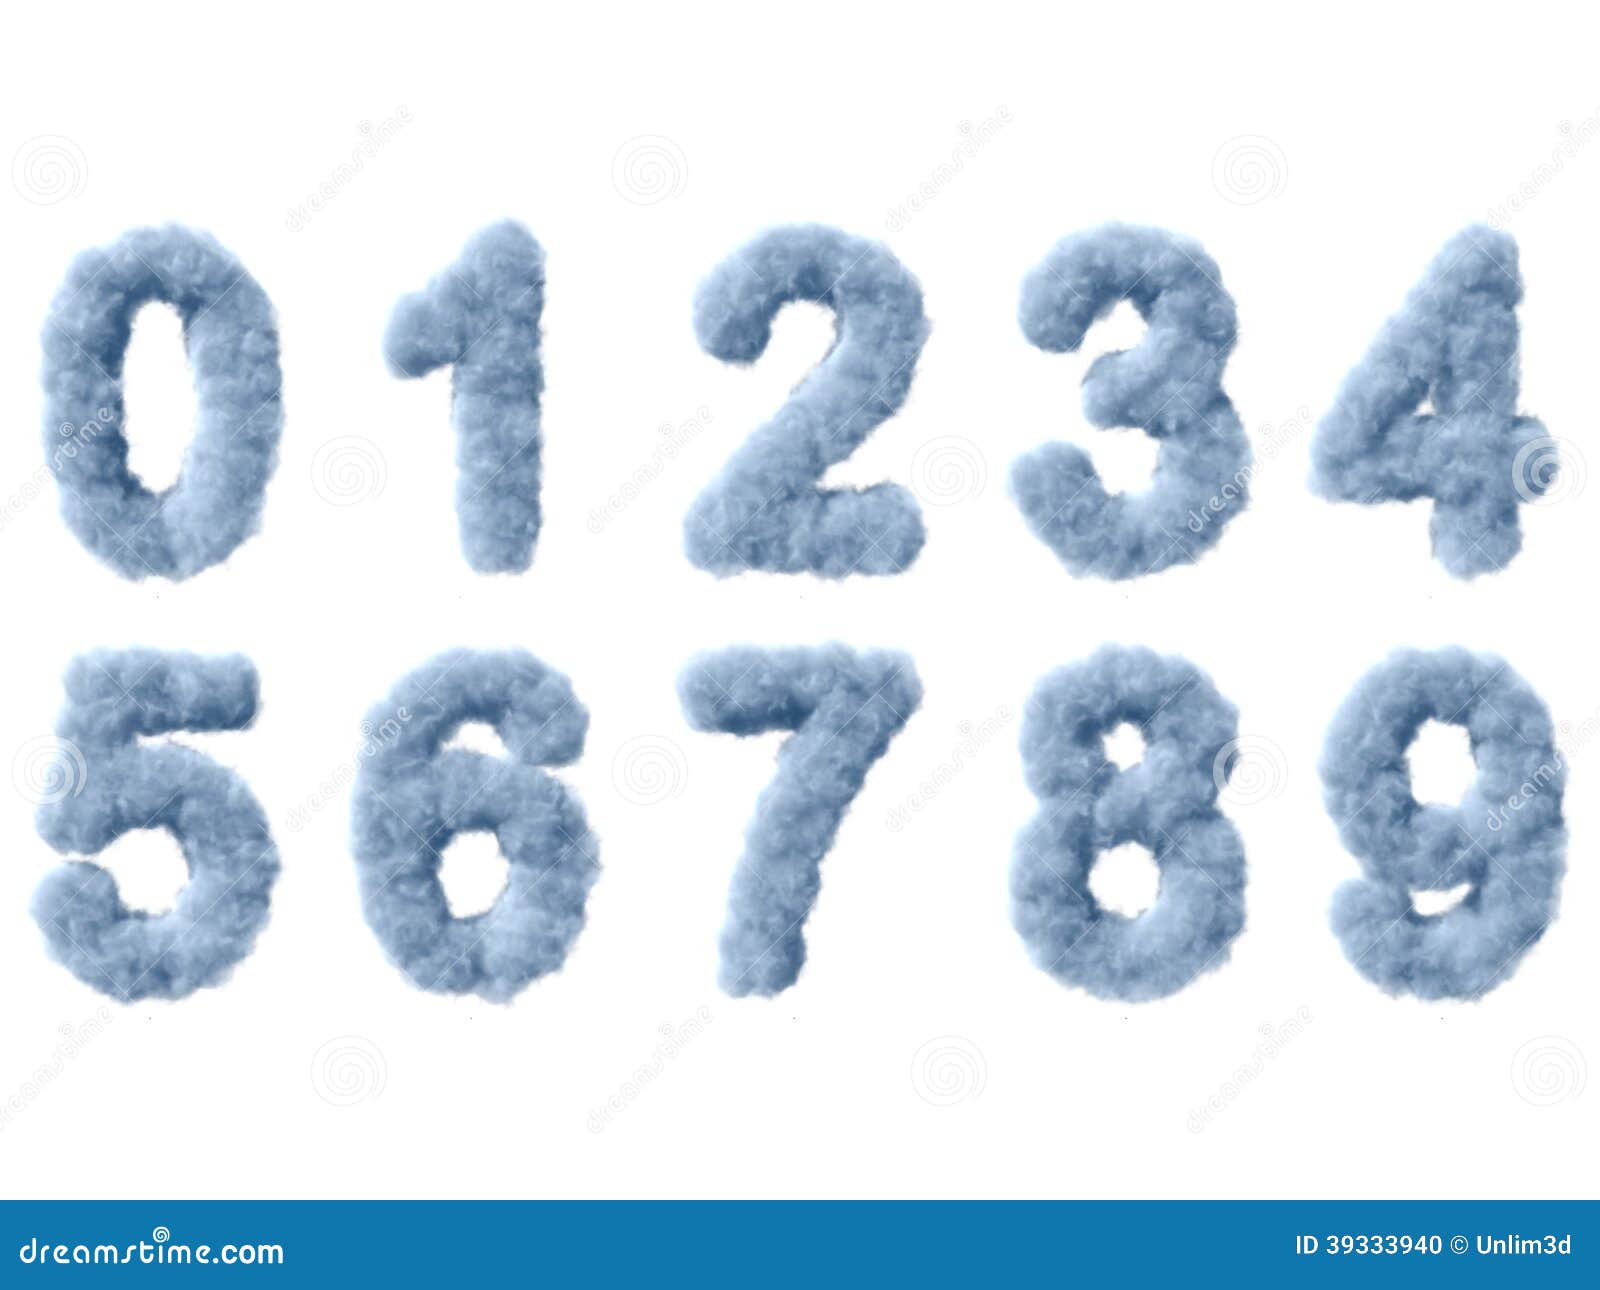 Снежки цифра 1. Цифры из снега. Цифры в виде облака. Цифры из облаков. Ледяные цифры.